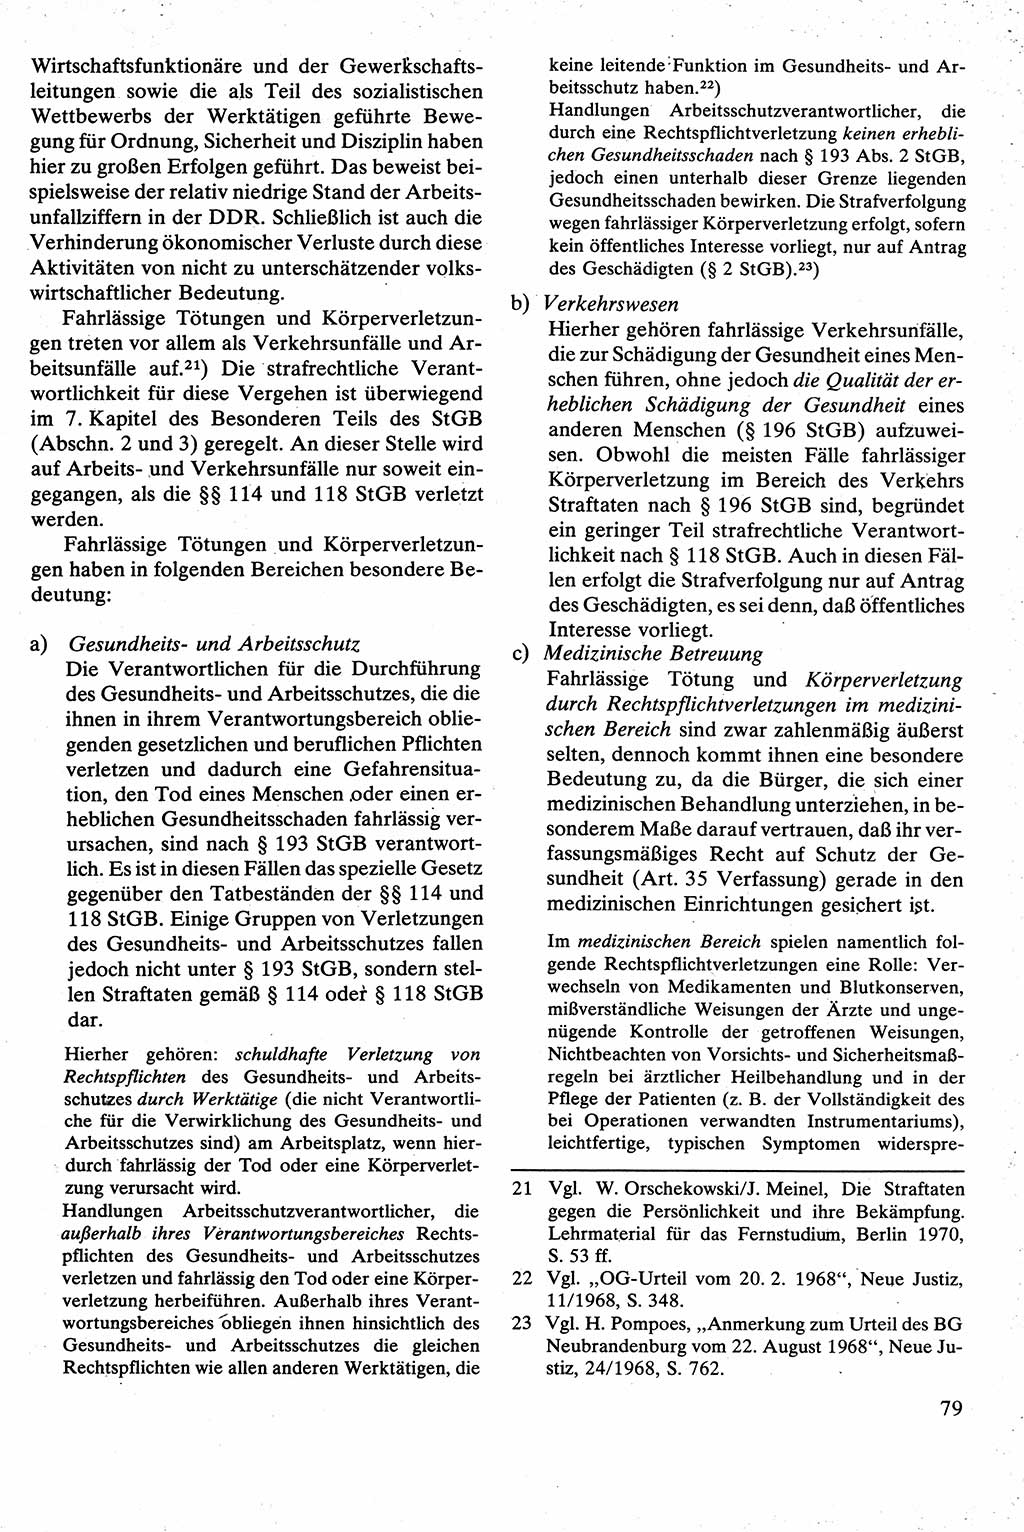 Strafrecht [Deutsche Demokratische Republik (DDR)], Besonderer Teil, Lehrbuch 1981, Seite 79 (Strafr. DDR BT Lb. 1981, S. 79)